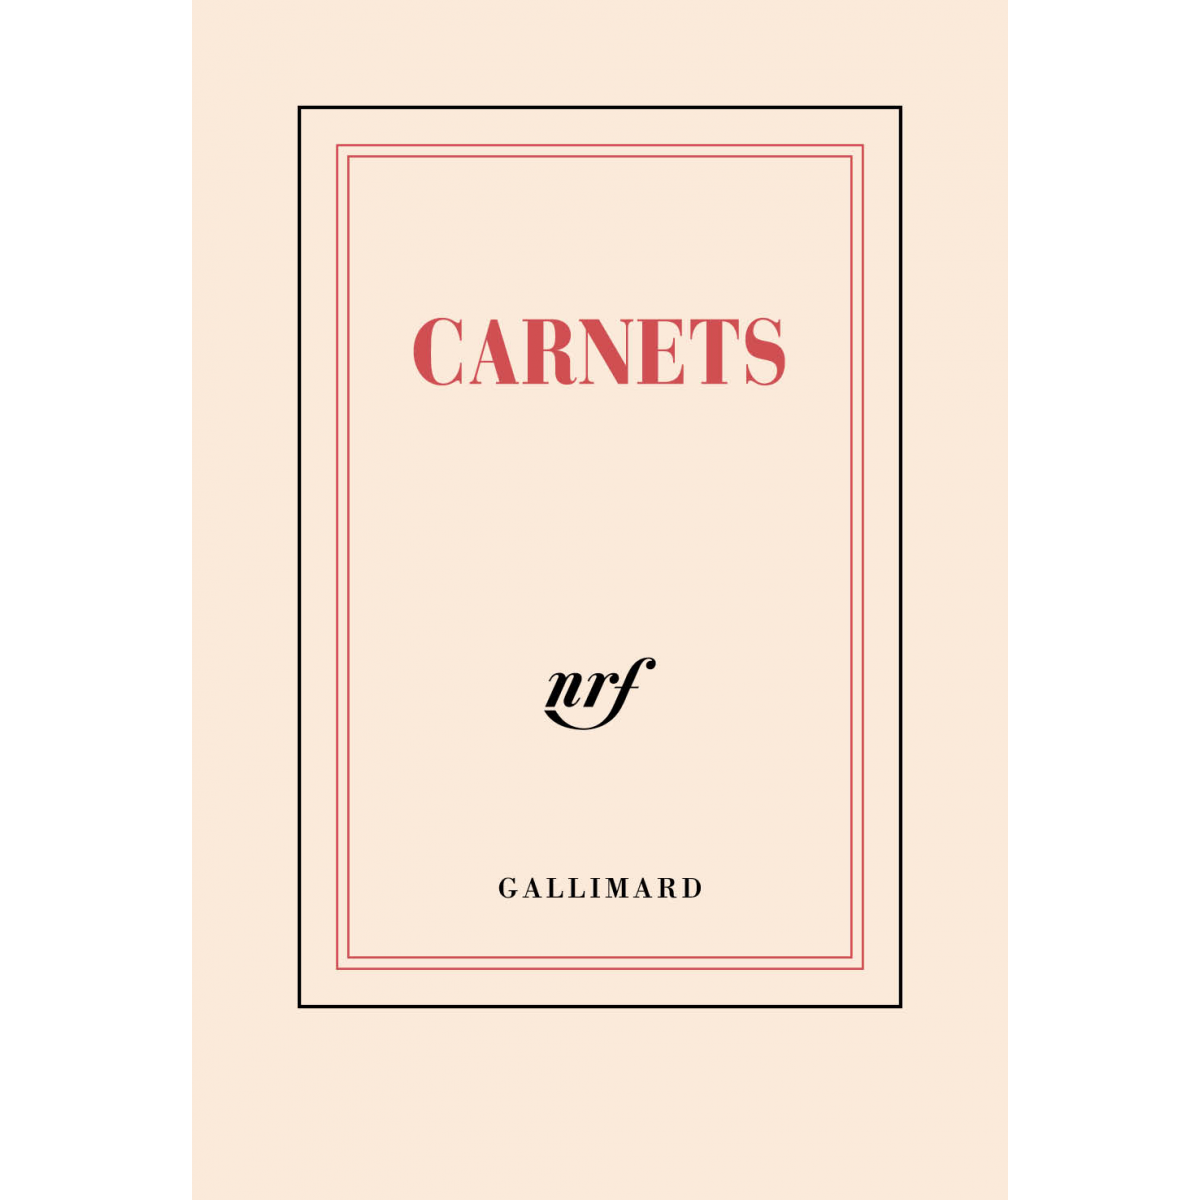 Écrire » (carnet poche de papeterie) - Galerie Gallimard